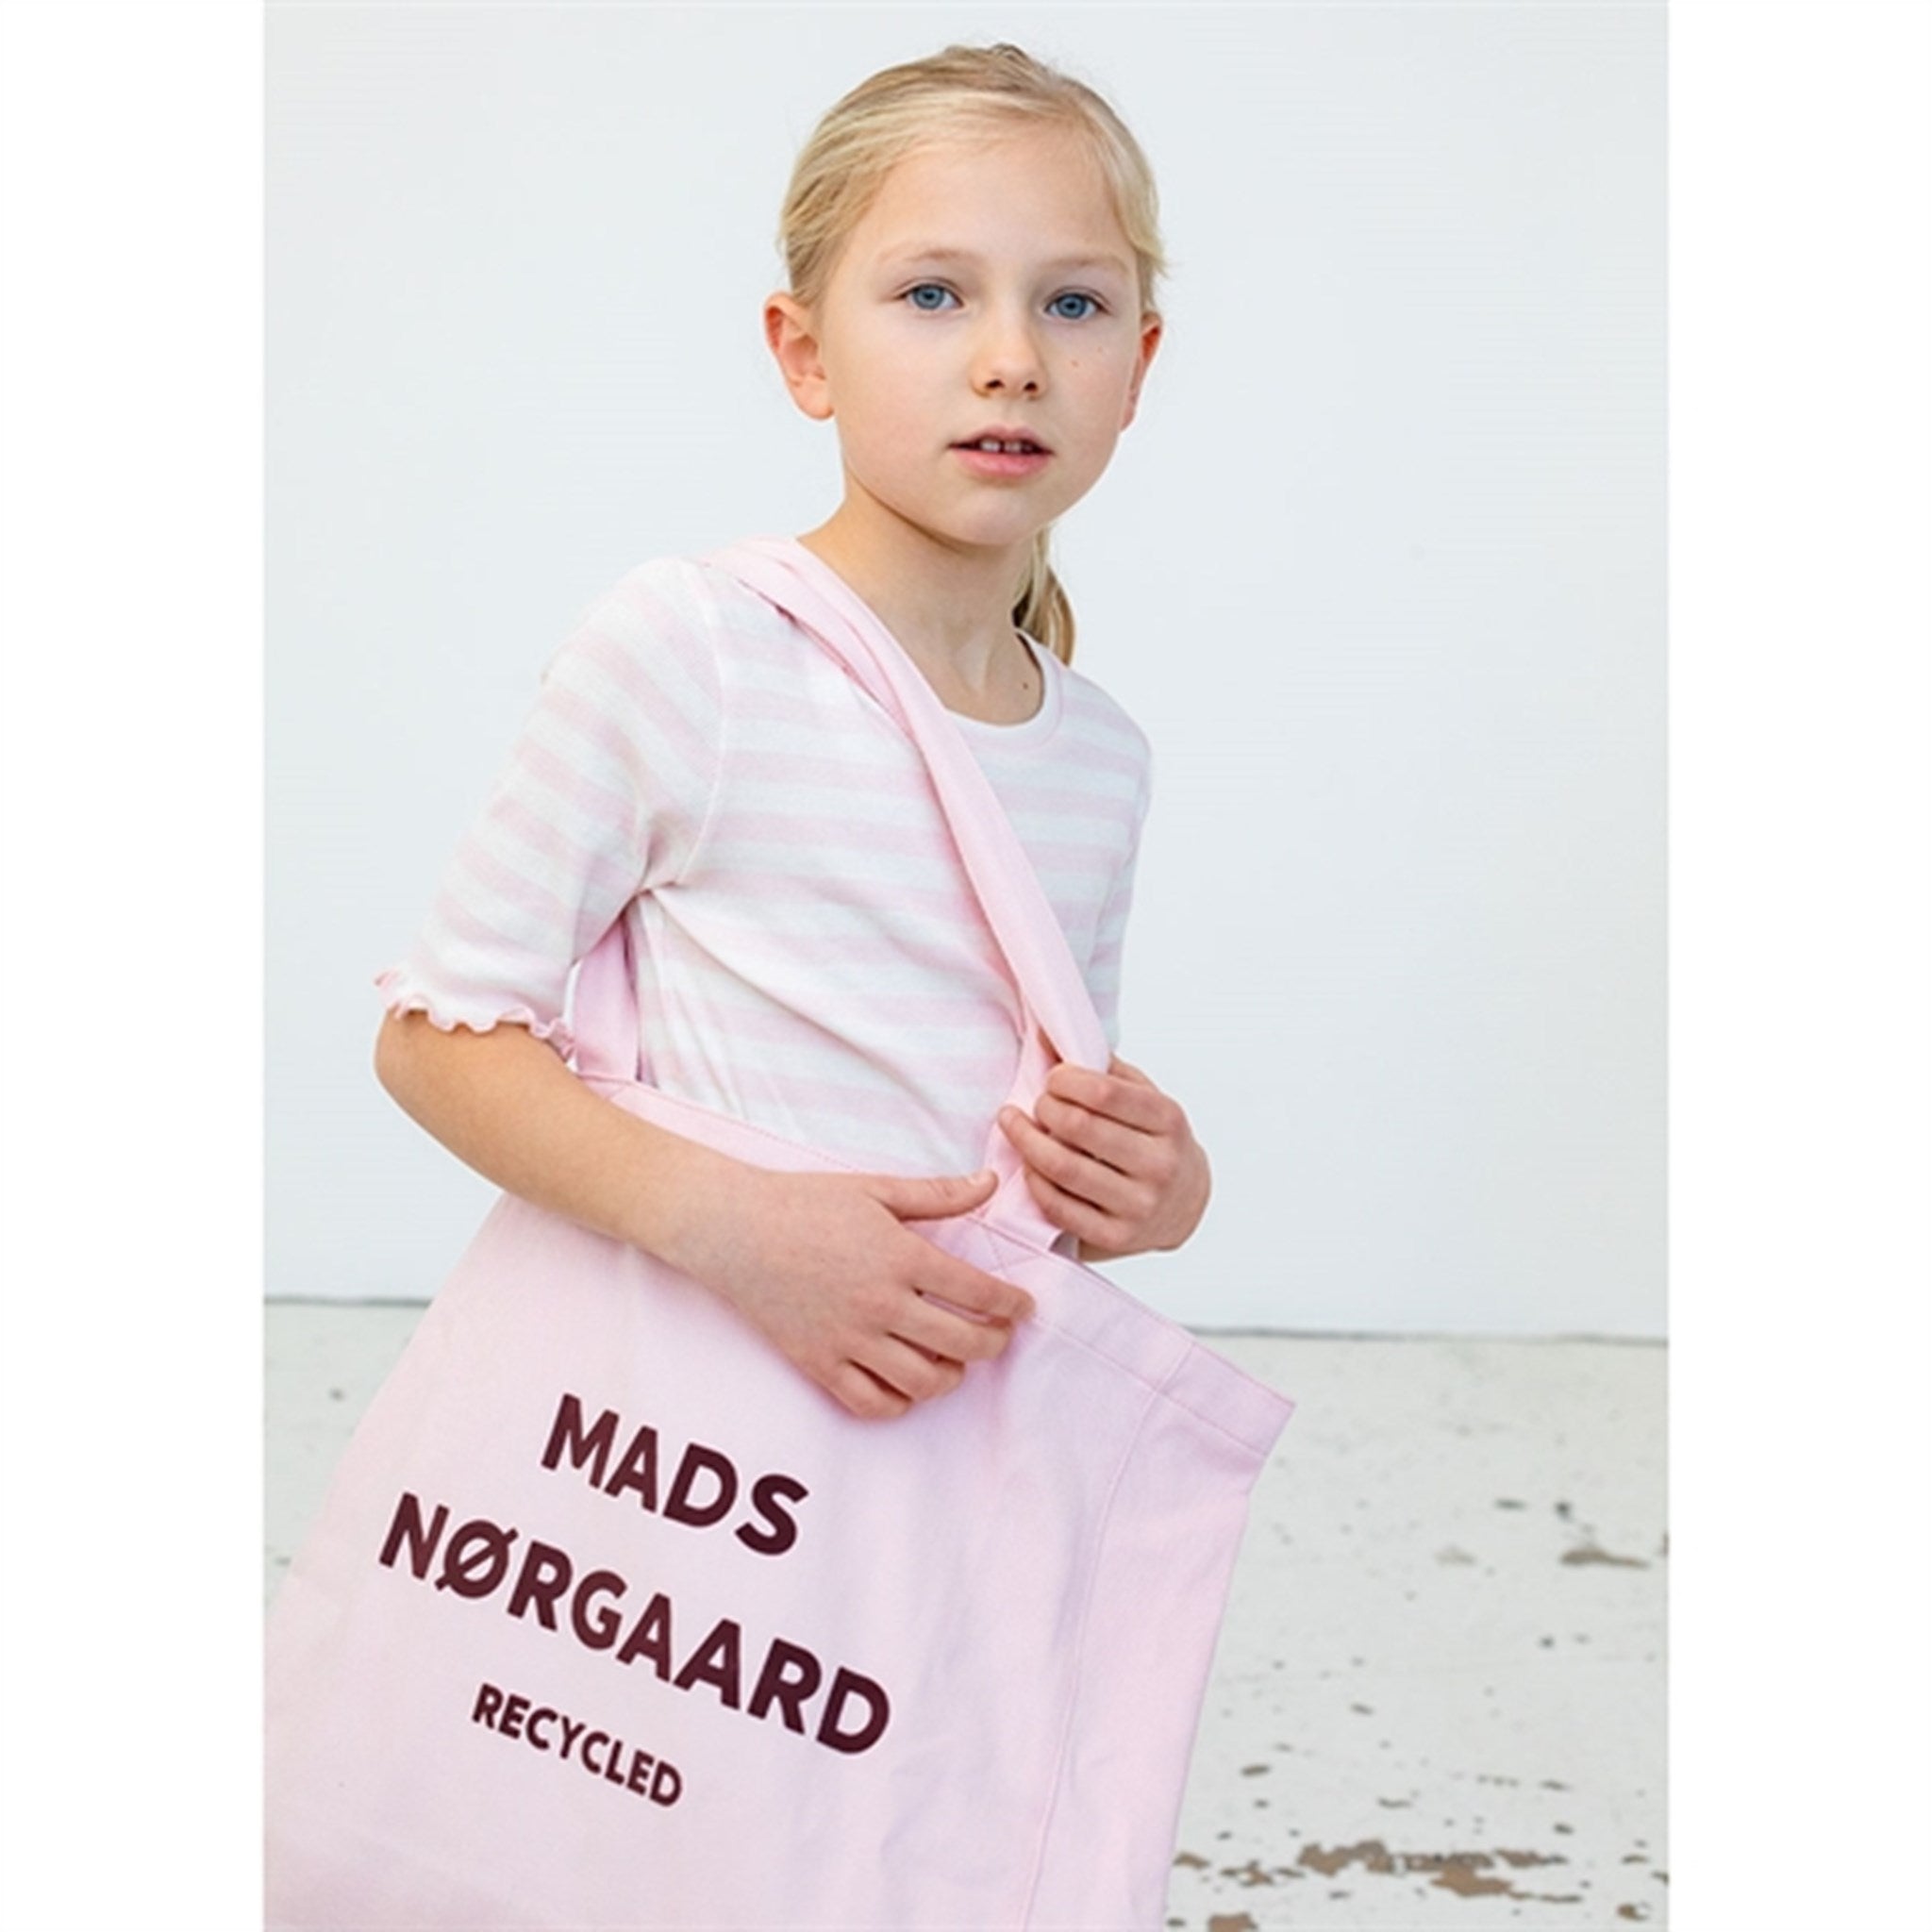 Mads Nørgaard Recycled Boutique Athene Veske Blushing Bride 3